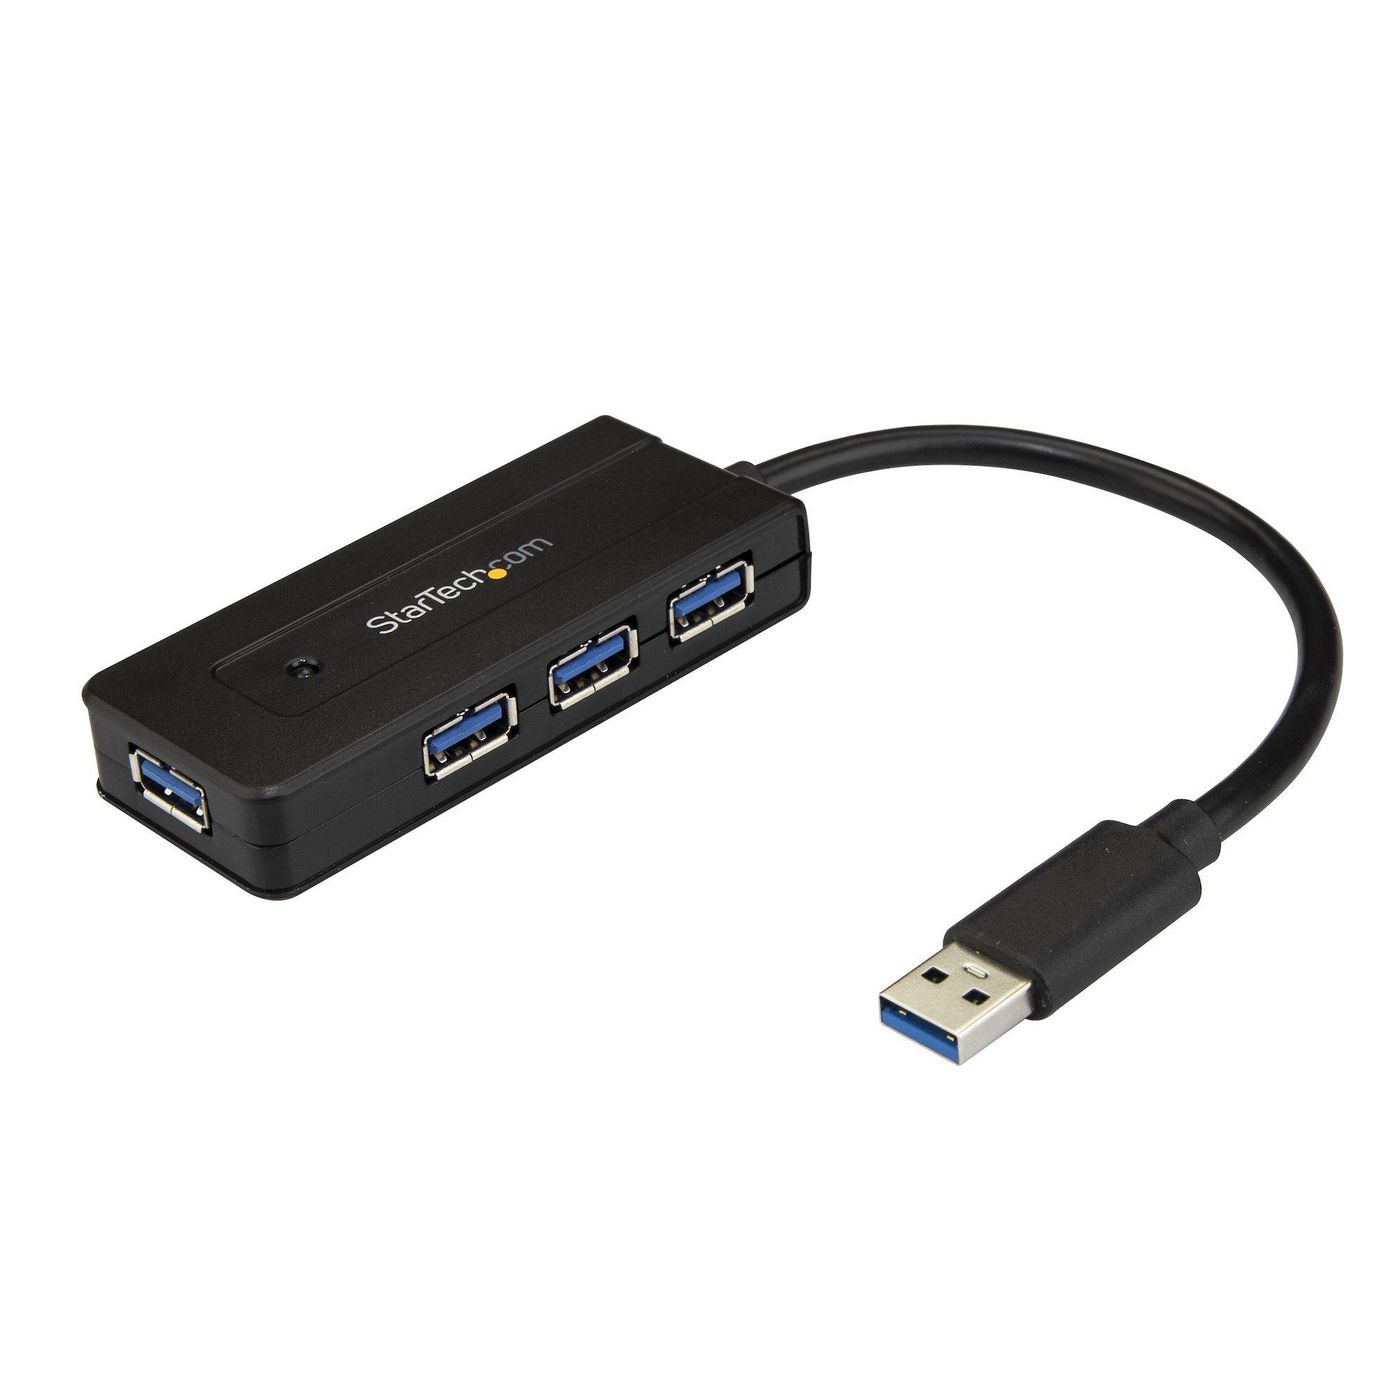 STARTECH.COM USB 3.0 Hub 4 Port - mit Ladeanschluss - inkl. Netzteil - USB Port Erweiterung